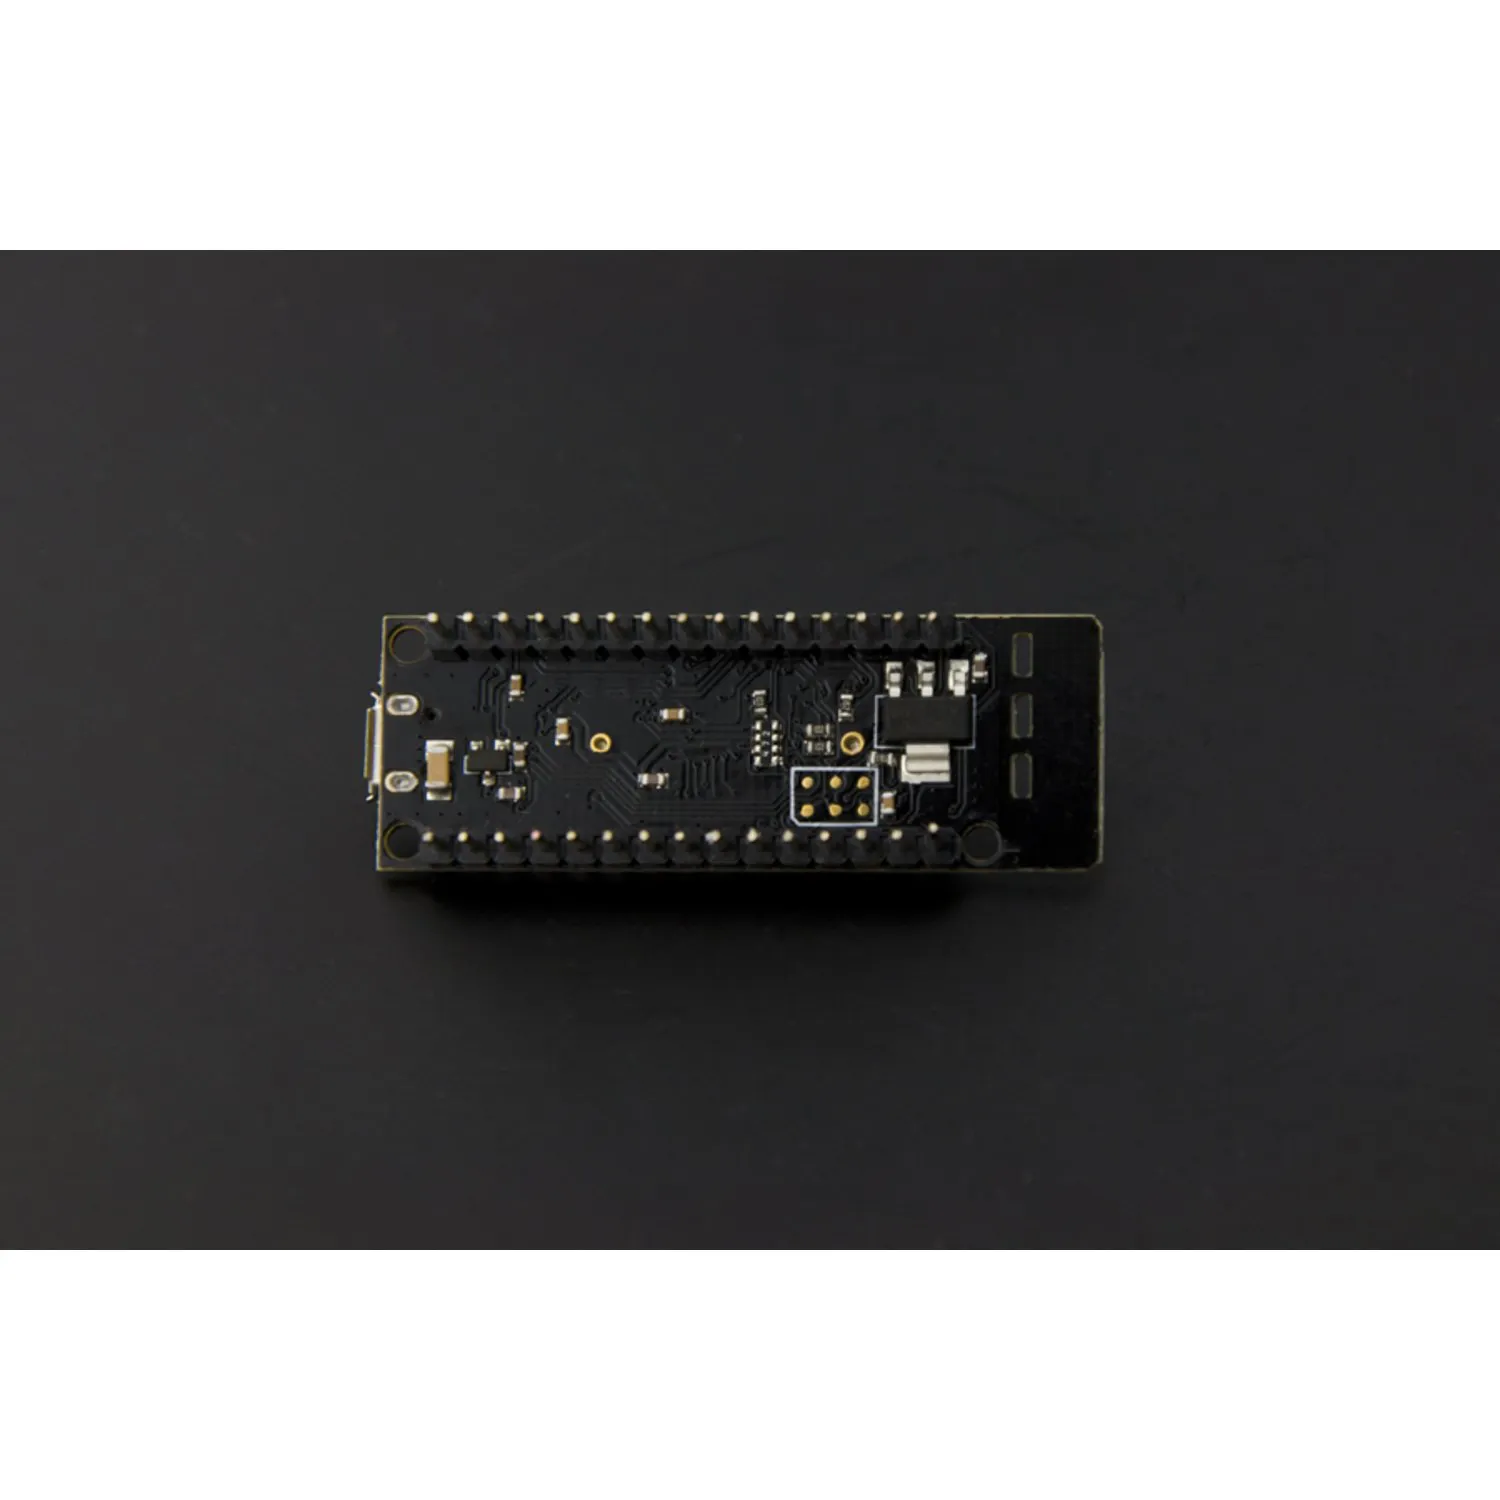 Photo of Bluno Nano - An Arduino Nano with Bluetooth 4.0